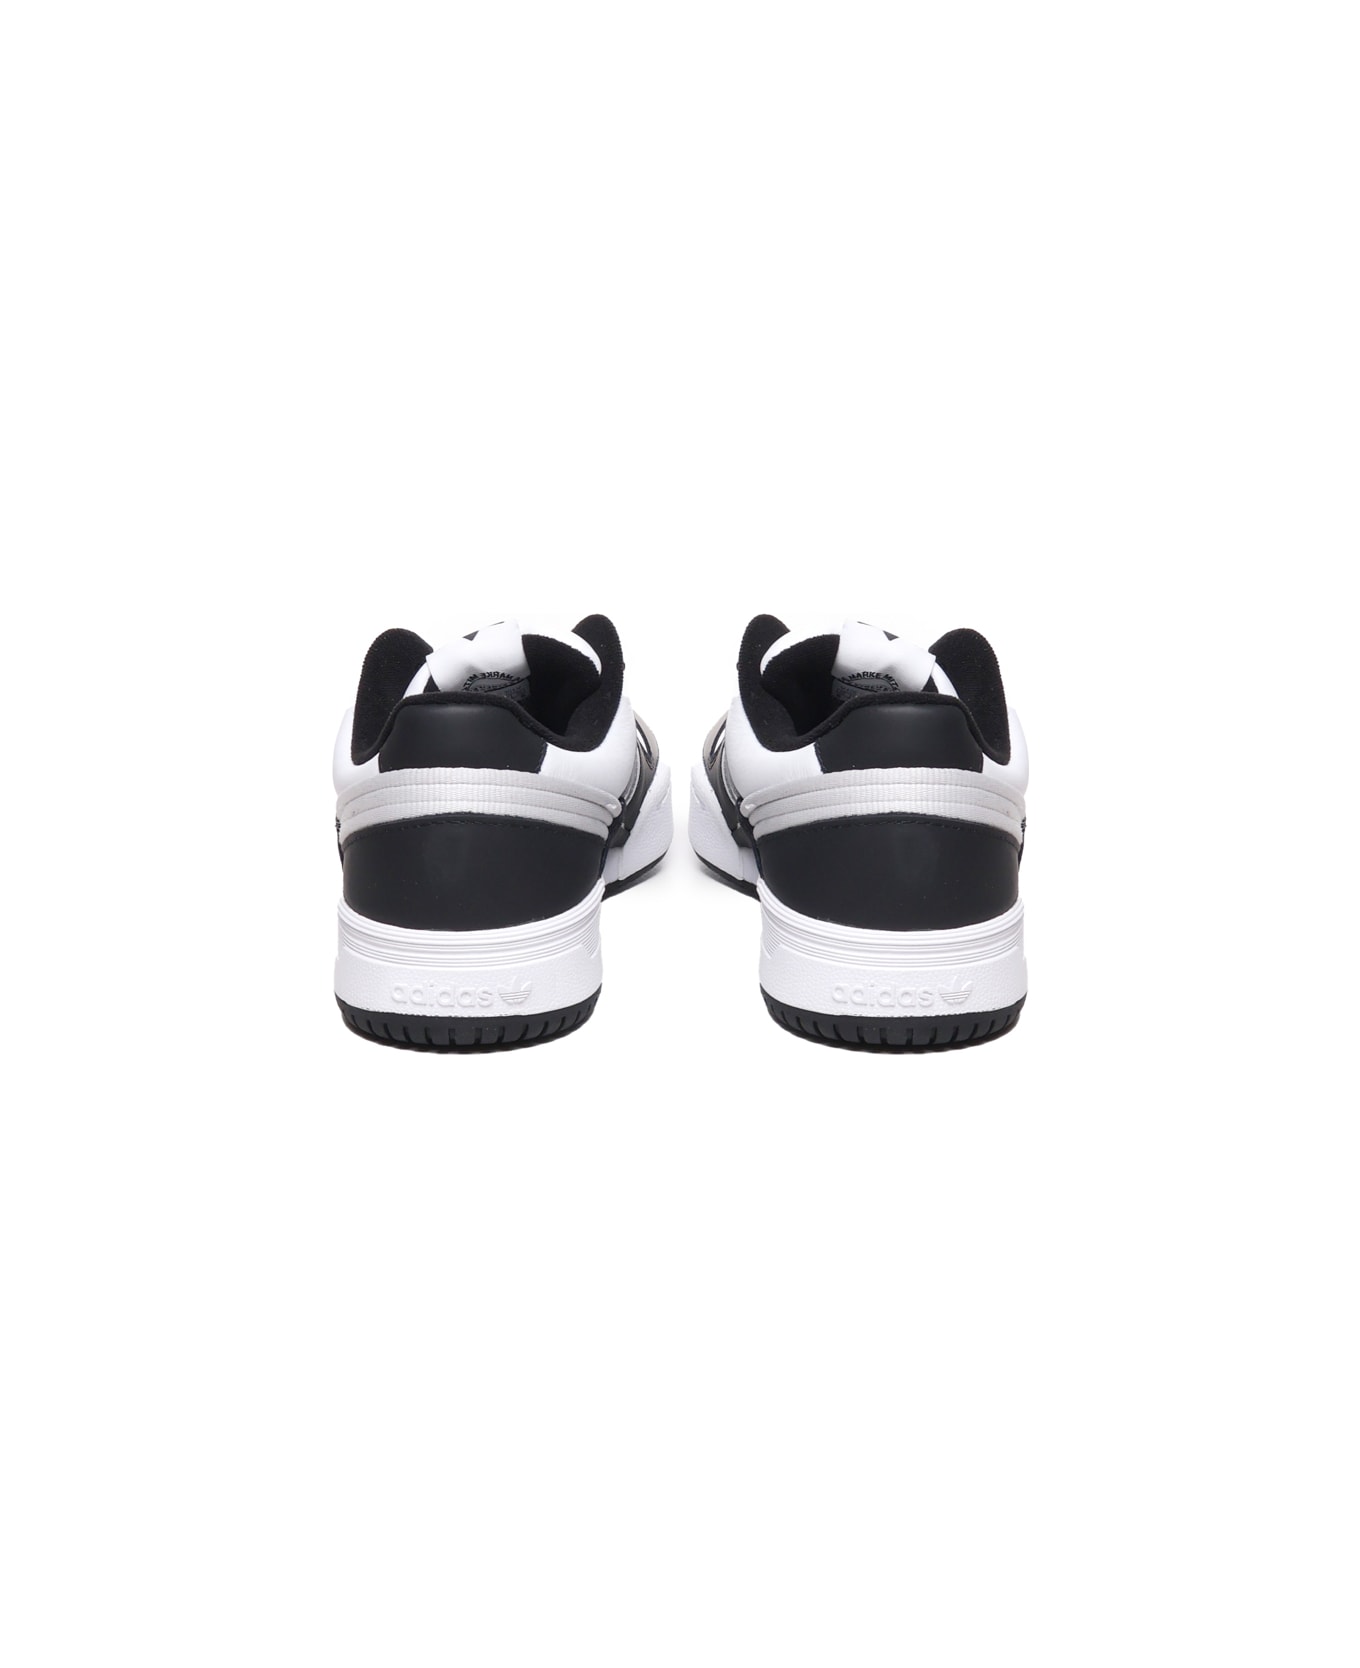 Adidas Originals Team Court 2 Sneakers - Black